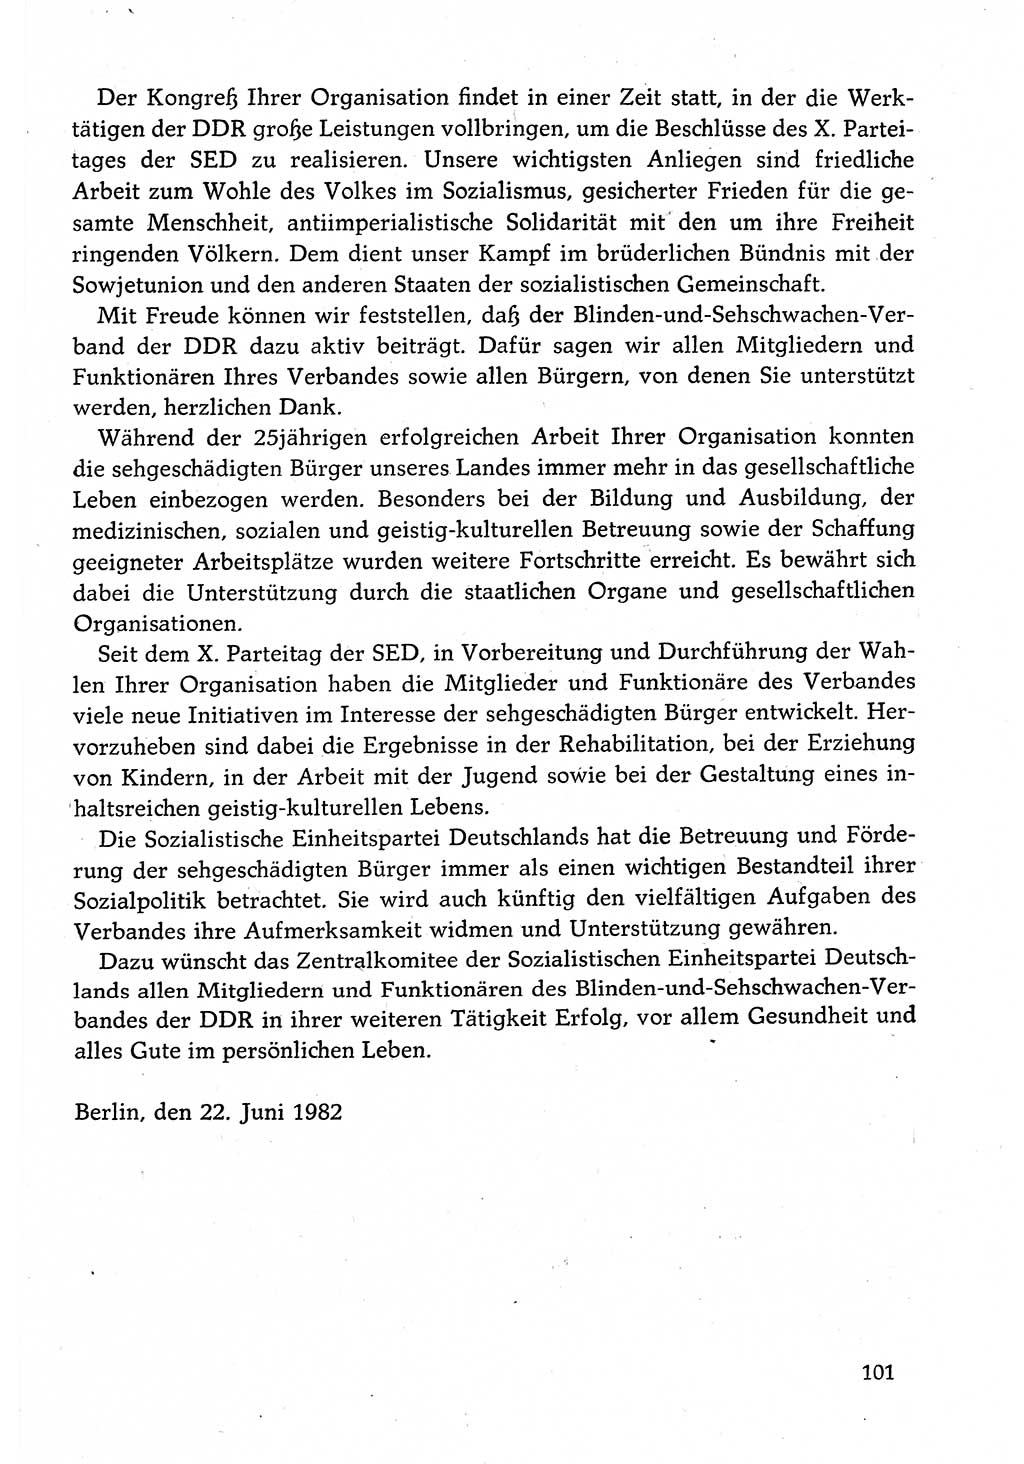 Dokumente der Sozialistischen Einheitspartei Deutschlands (SED) [Deutsche Demokratische Republik (DDR)] 1982-1983, Seite 101 (Dok. SED DDR 1982-1983, S. 101)